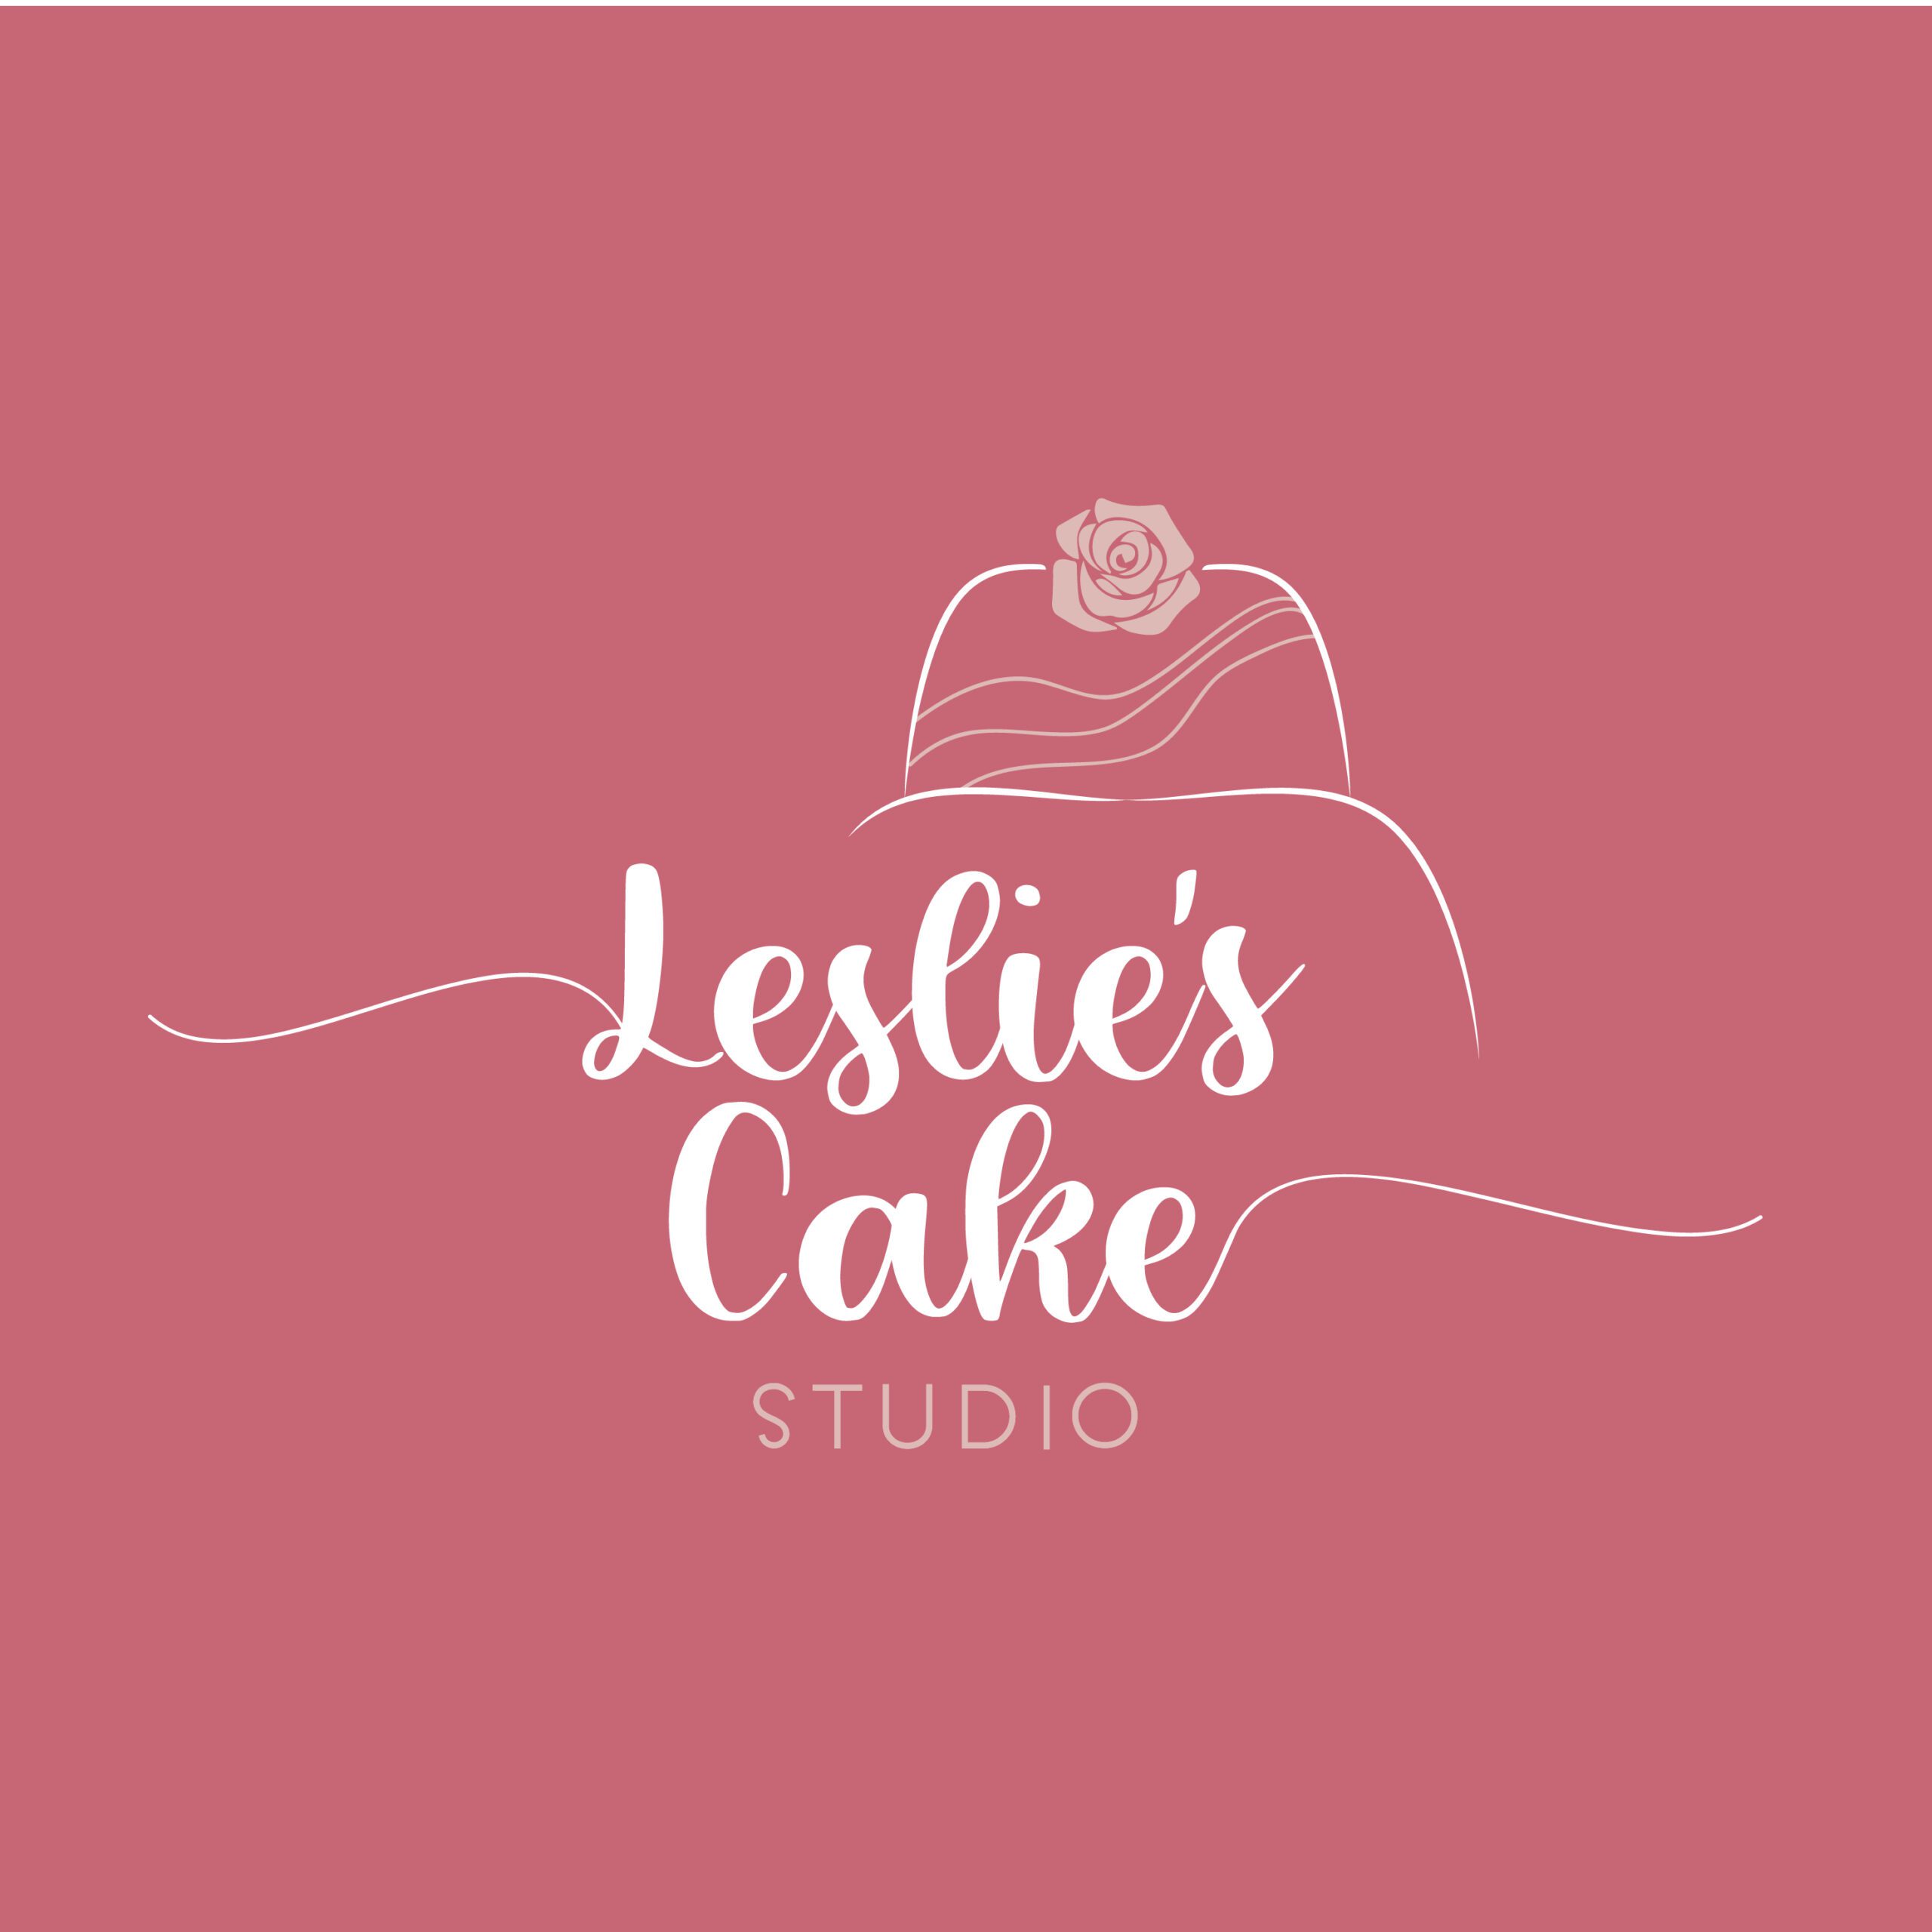 LESLIE'S CAKE STUDIO logo vppal-03